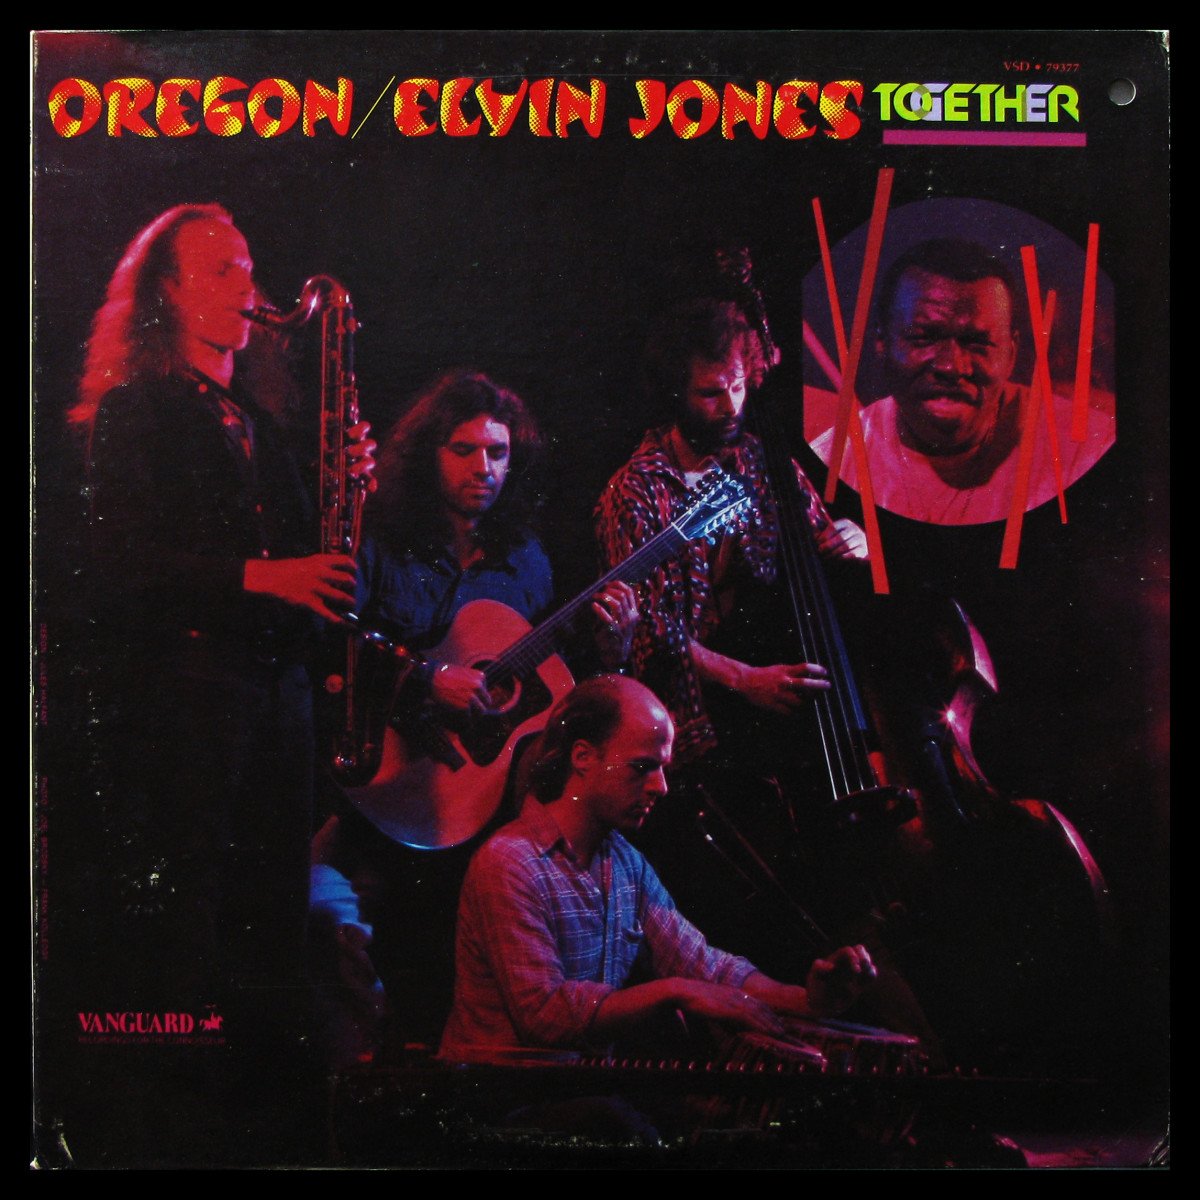 LP Oregon / Elvin Jones — Together фото